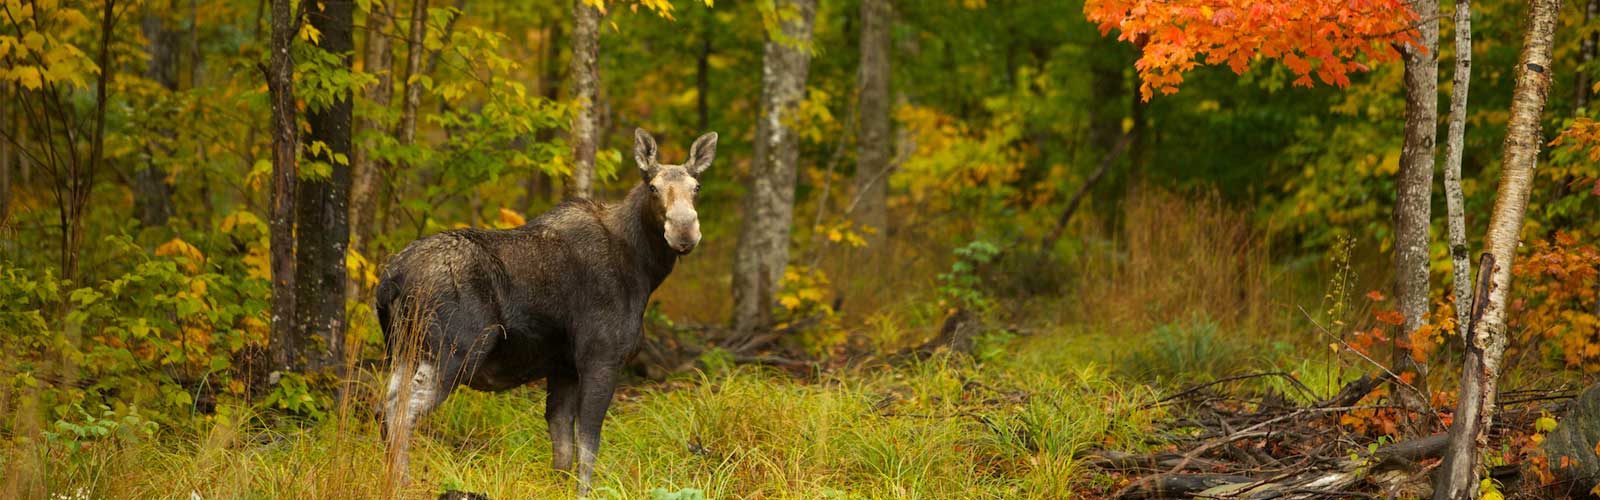 mature moose in vermont autumn woods